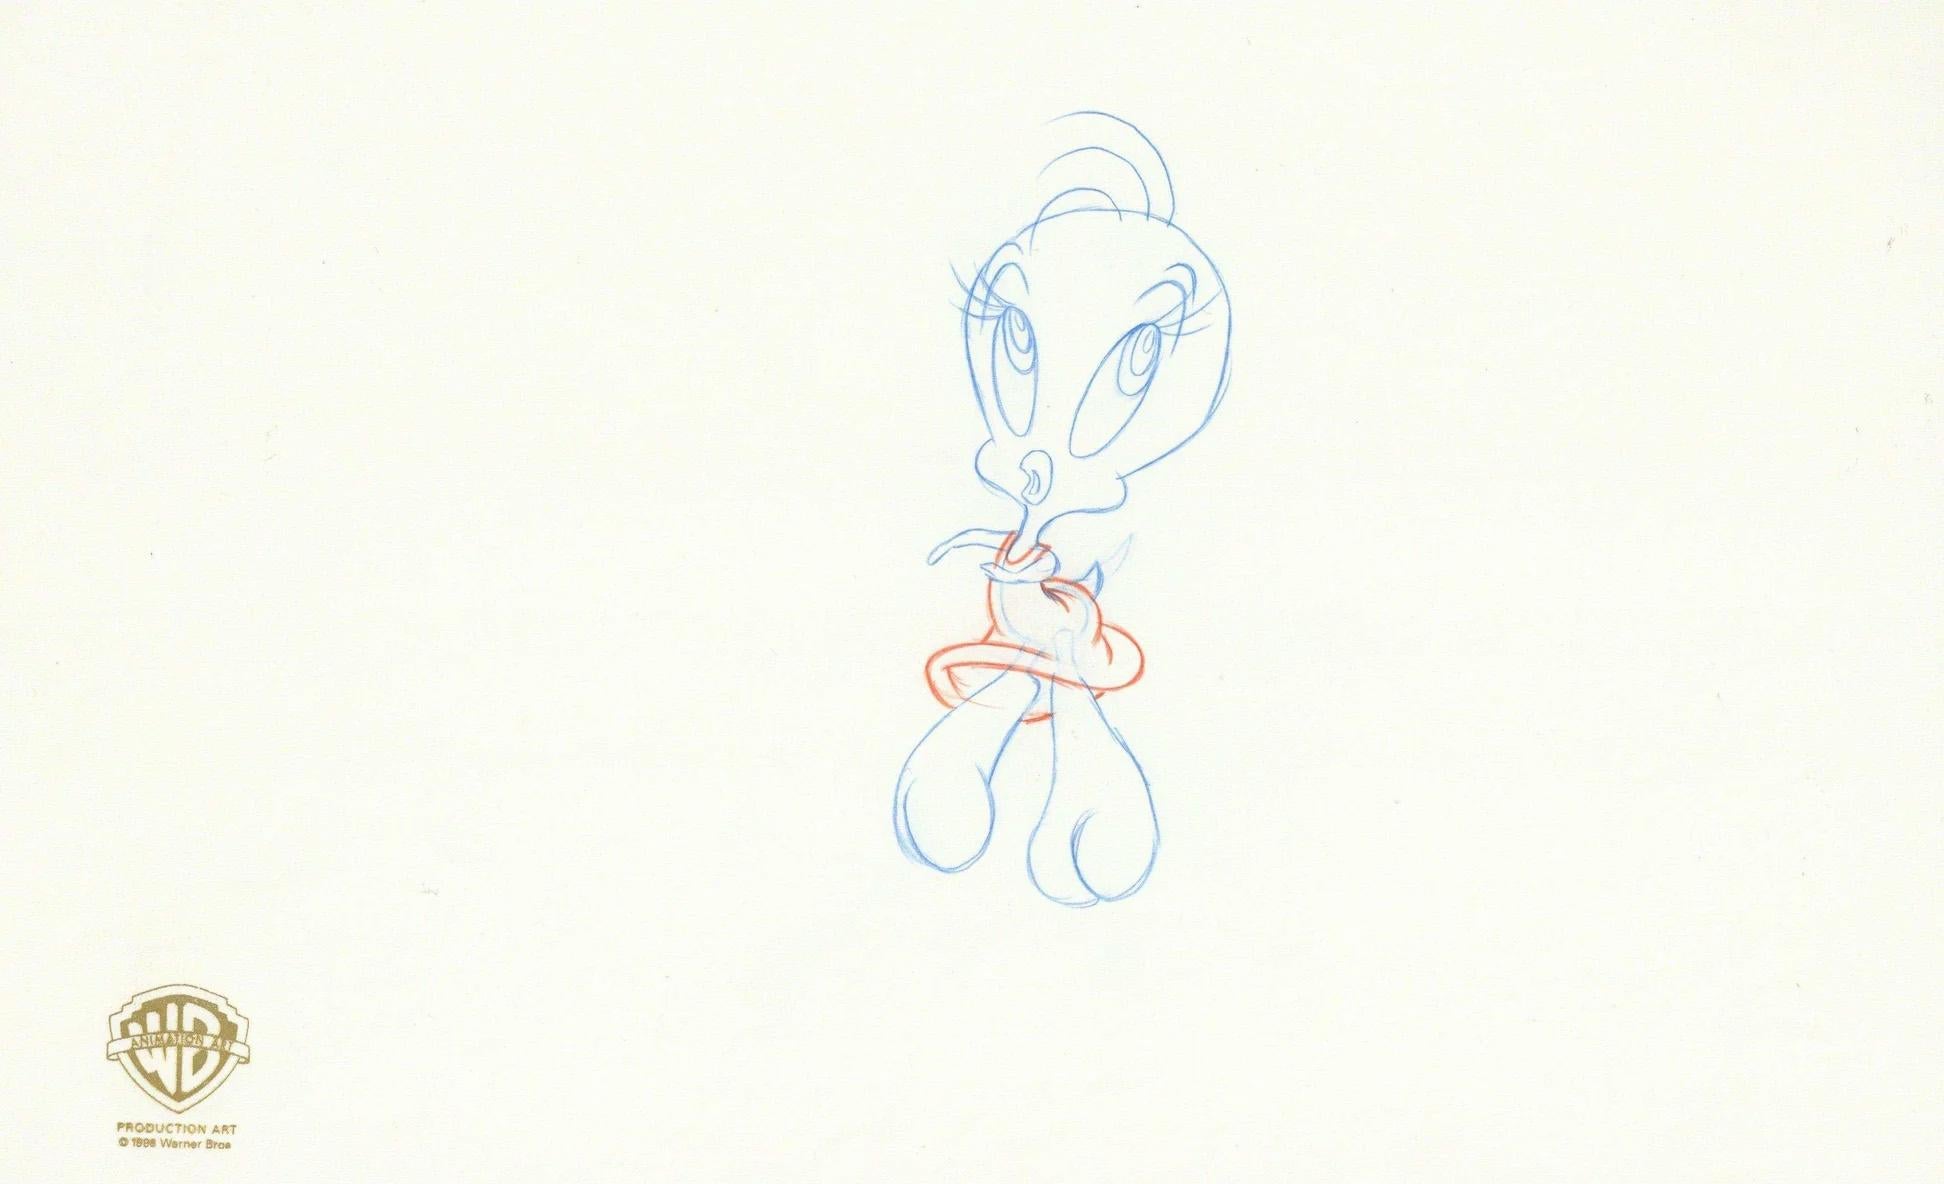 Space Jam Original Production Drawing: Tweety - Art by Warner Bros. Studio Artists